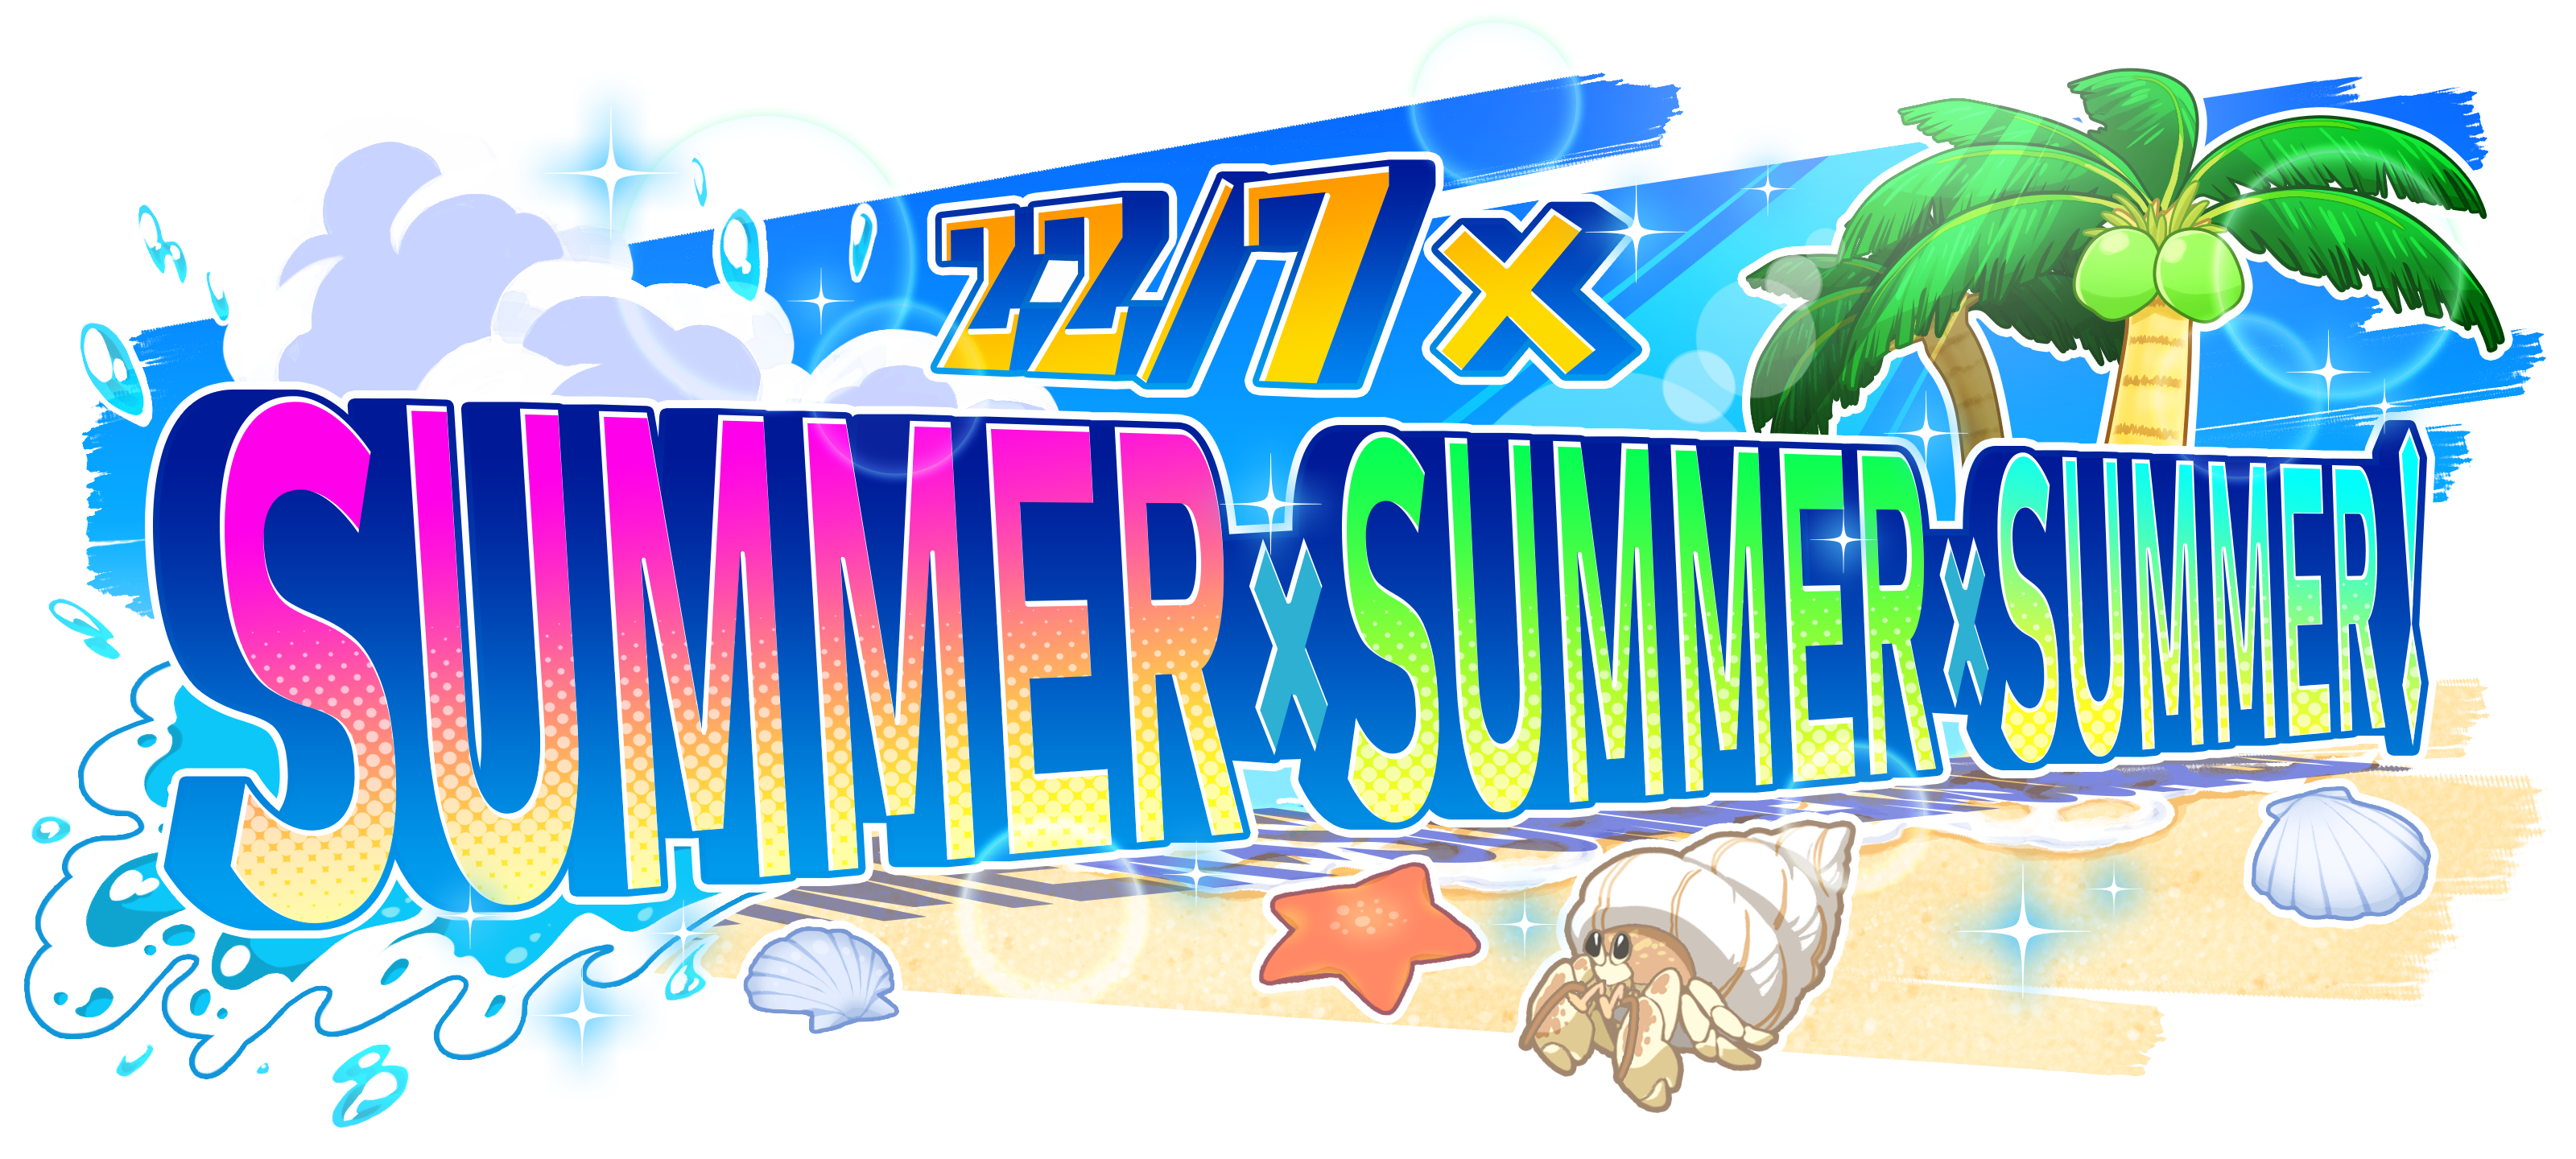 リズムゲームアプリ 22 7 音楽の時間 にて 初の 水着イベント 22 7 Summer Summer Summer 開催決定 株式会社アニプレックスのプレスリリース